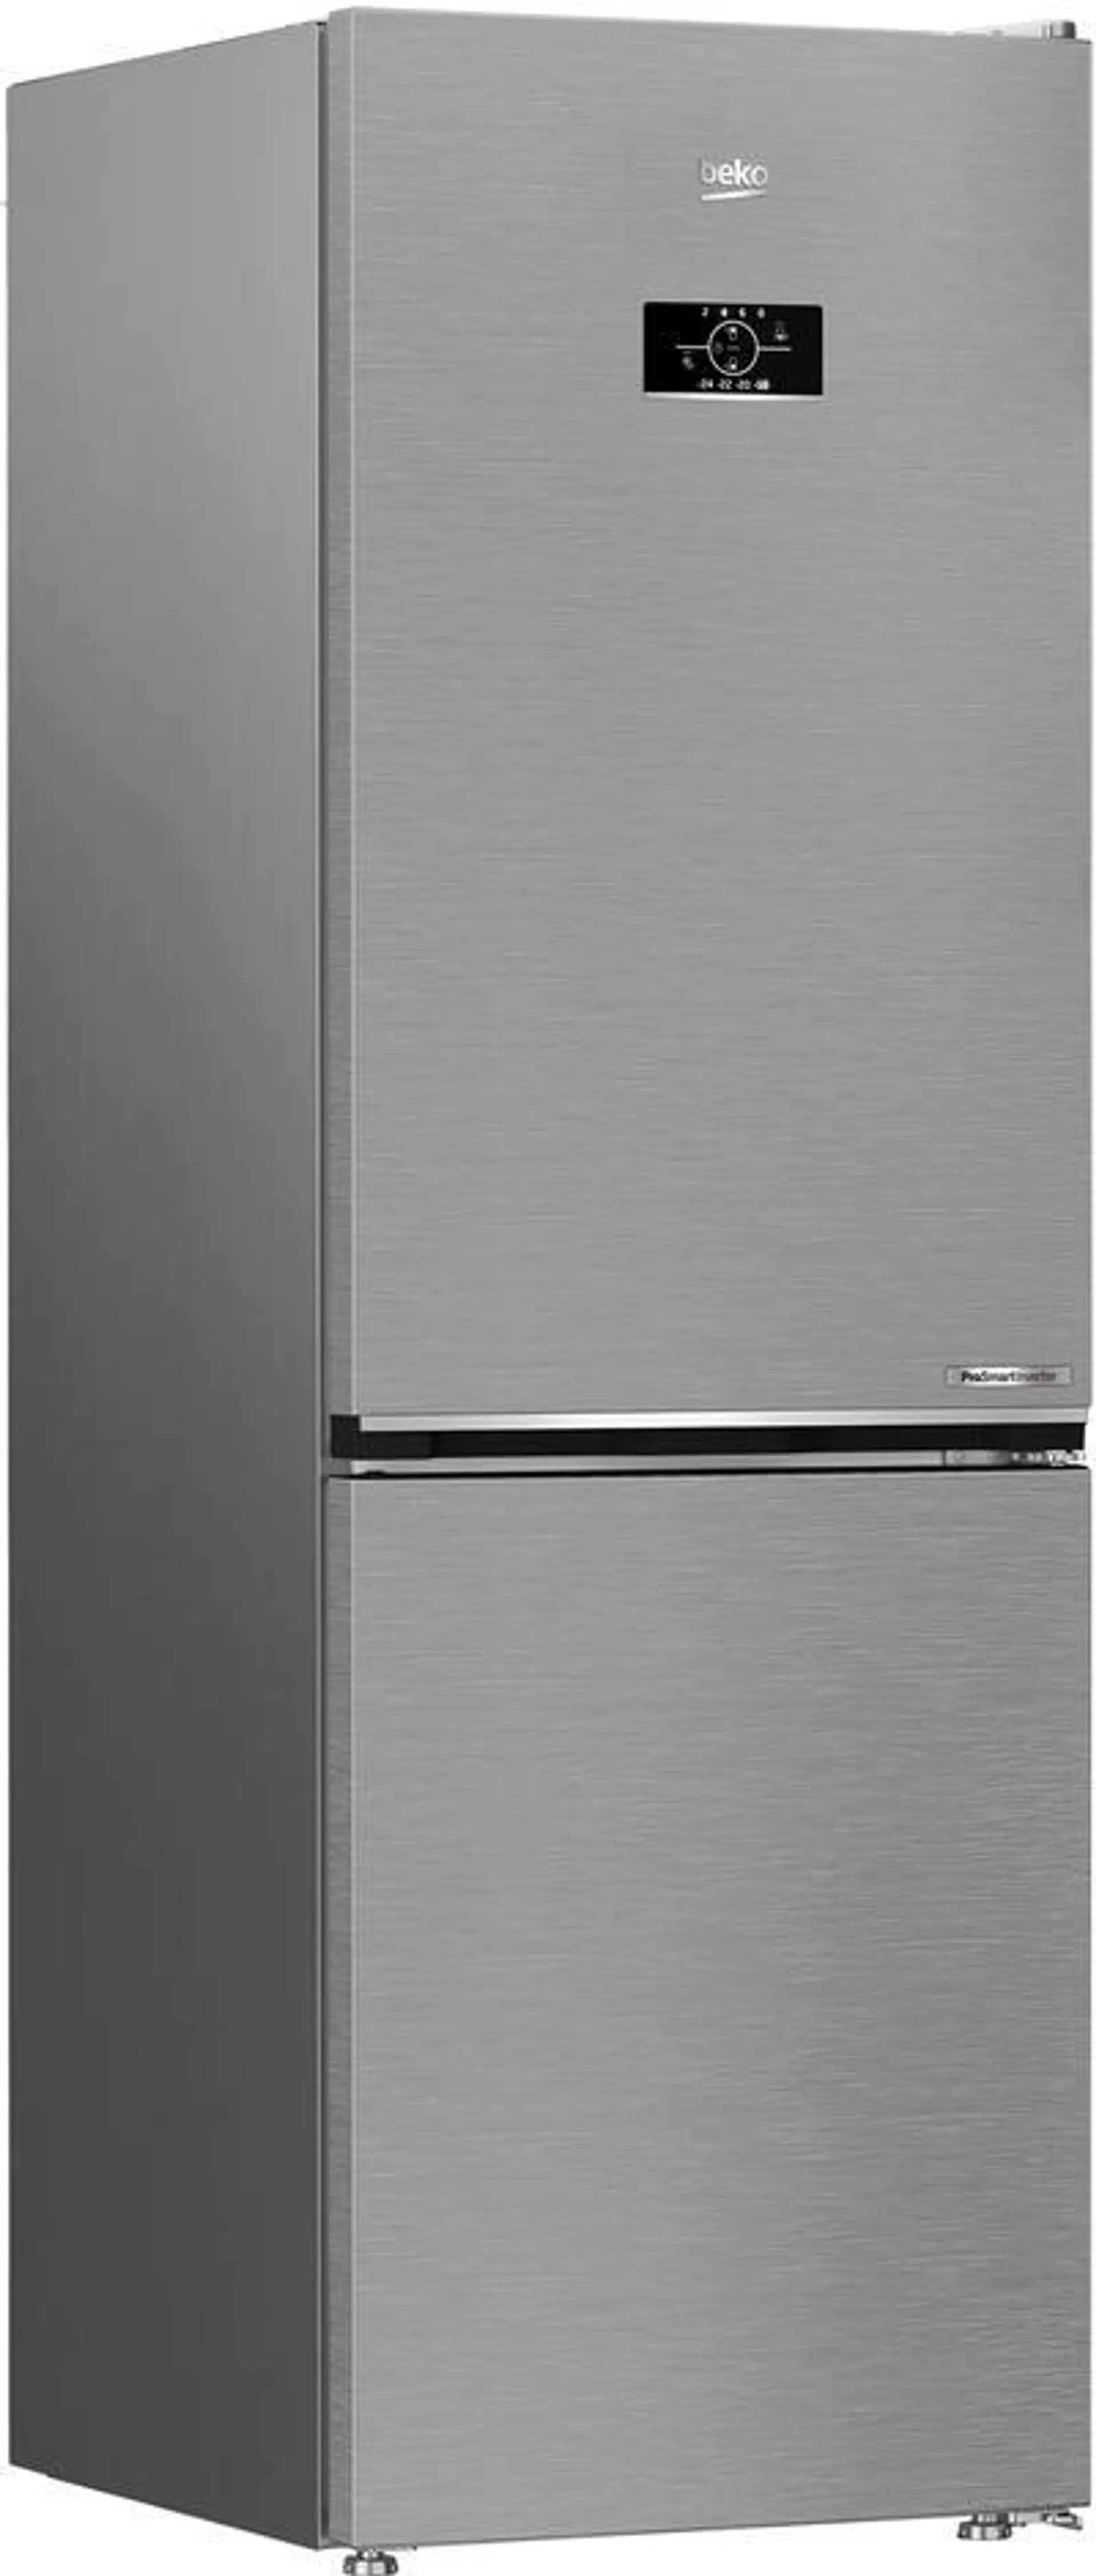 Tipologia di frigorifero Combinati - Nuova Classe efficienza energetica C - Sistema di raffreddamento No frost - Tipo di Ripiani Cristallo/Vetro